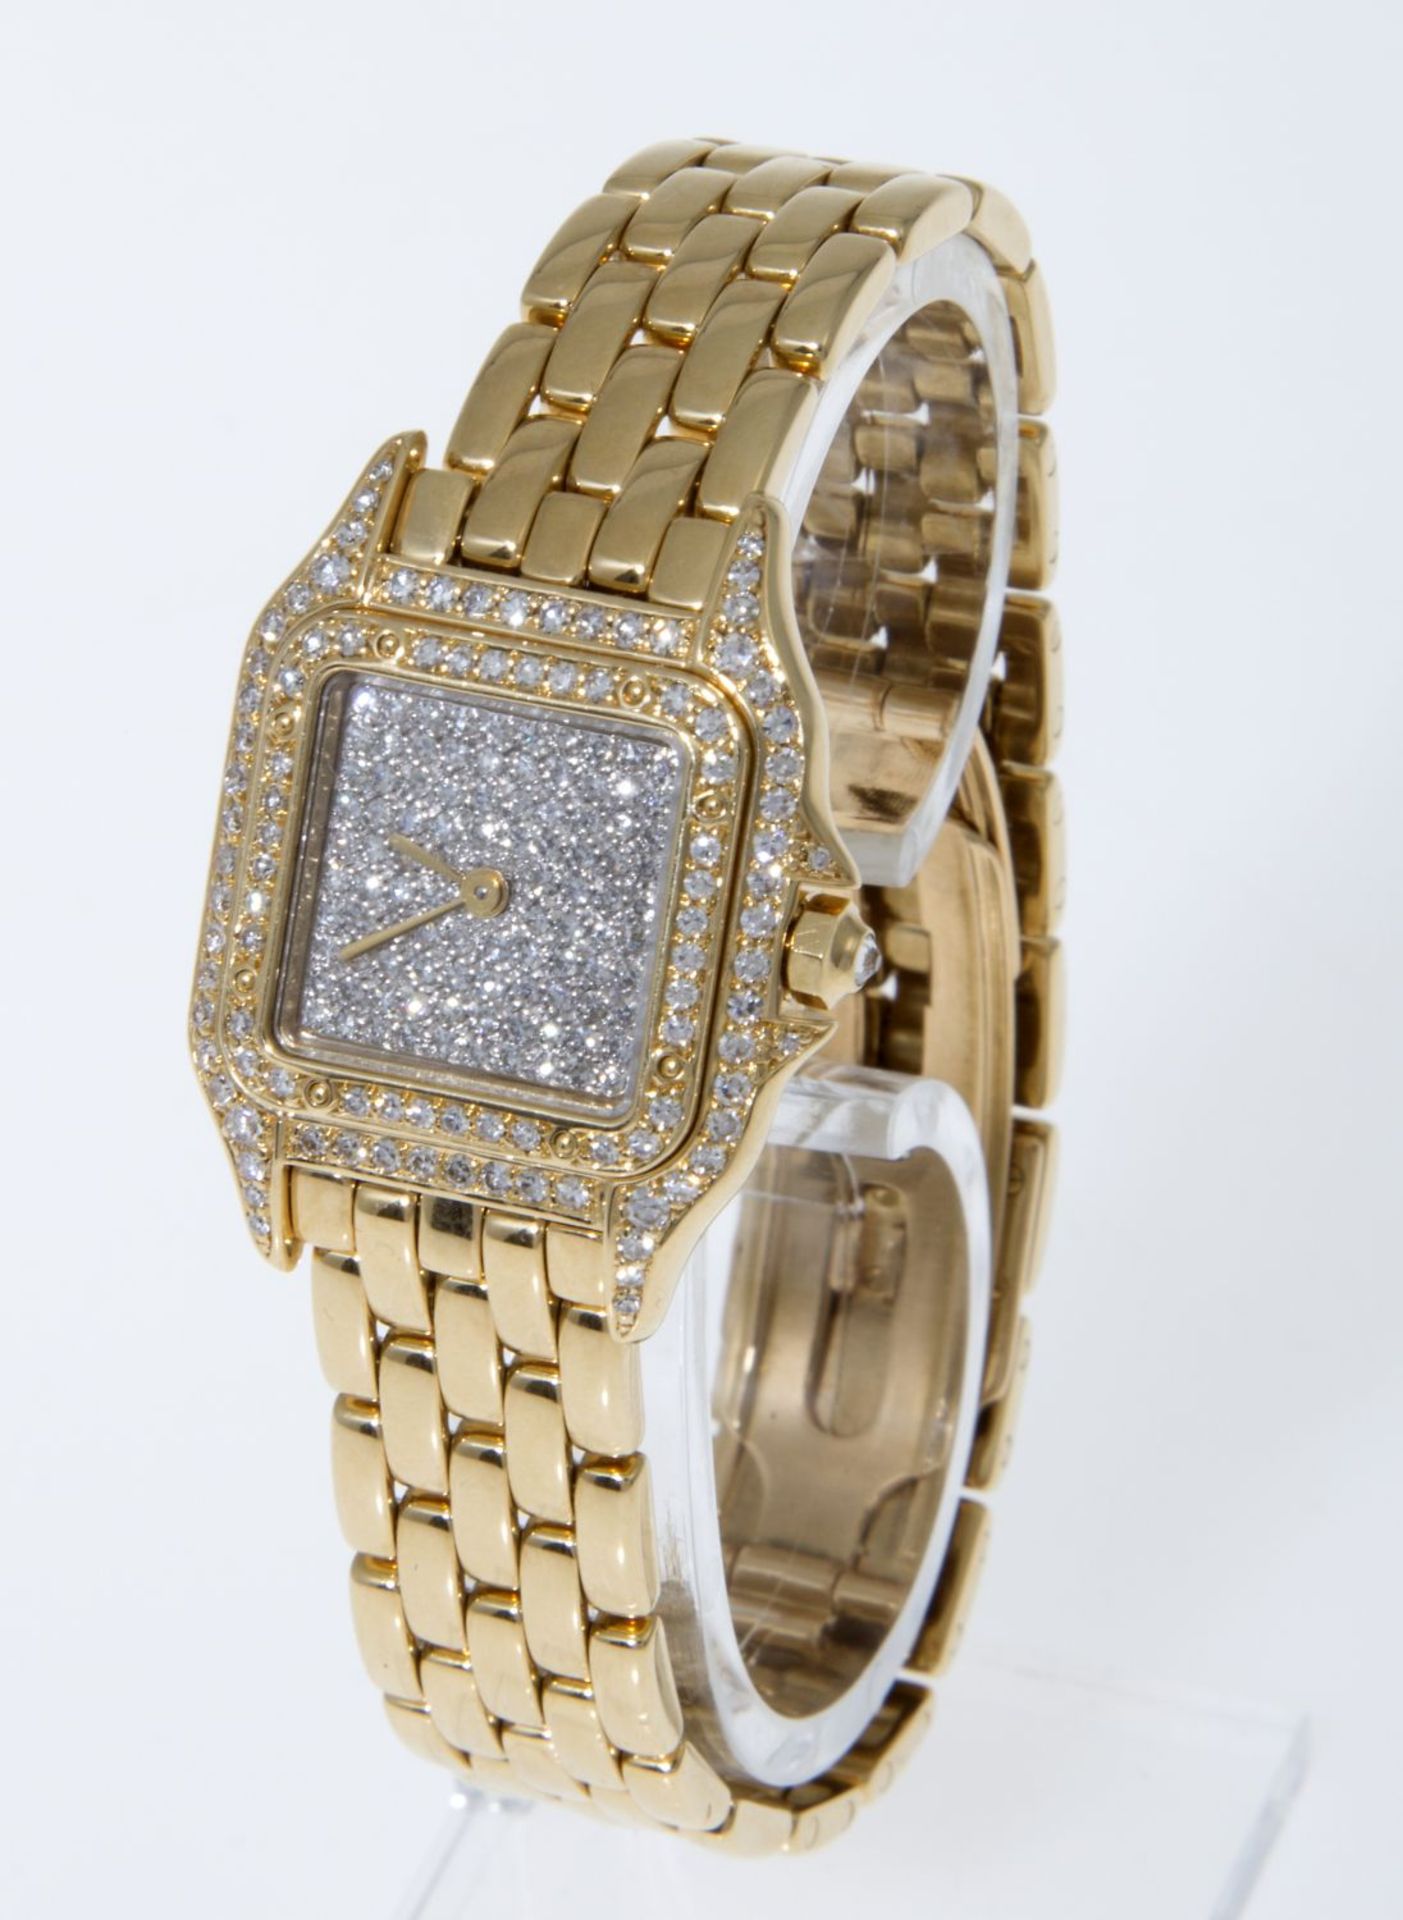 Cartier-Damenarmbanduhr "Panthère" mit reichem Diamant-BesatzGehäuse und Armband aus Gelbgold 750.